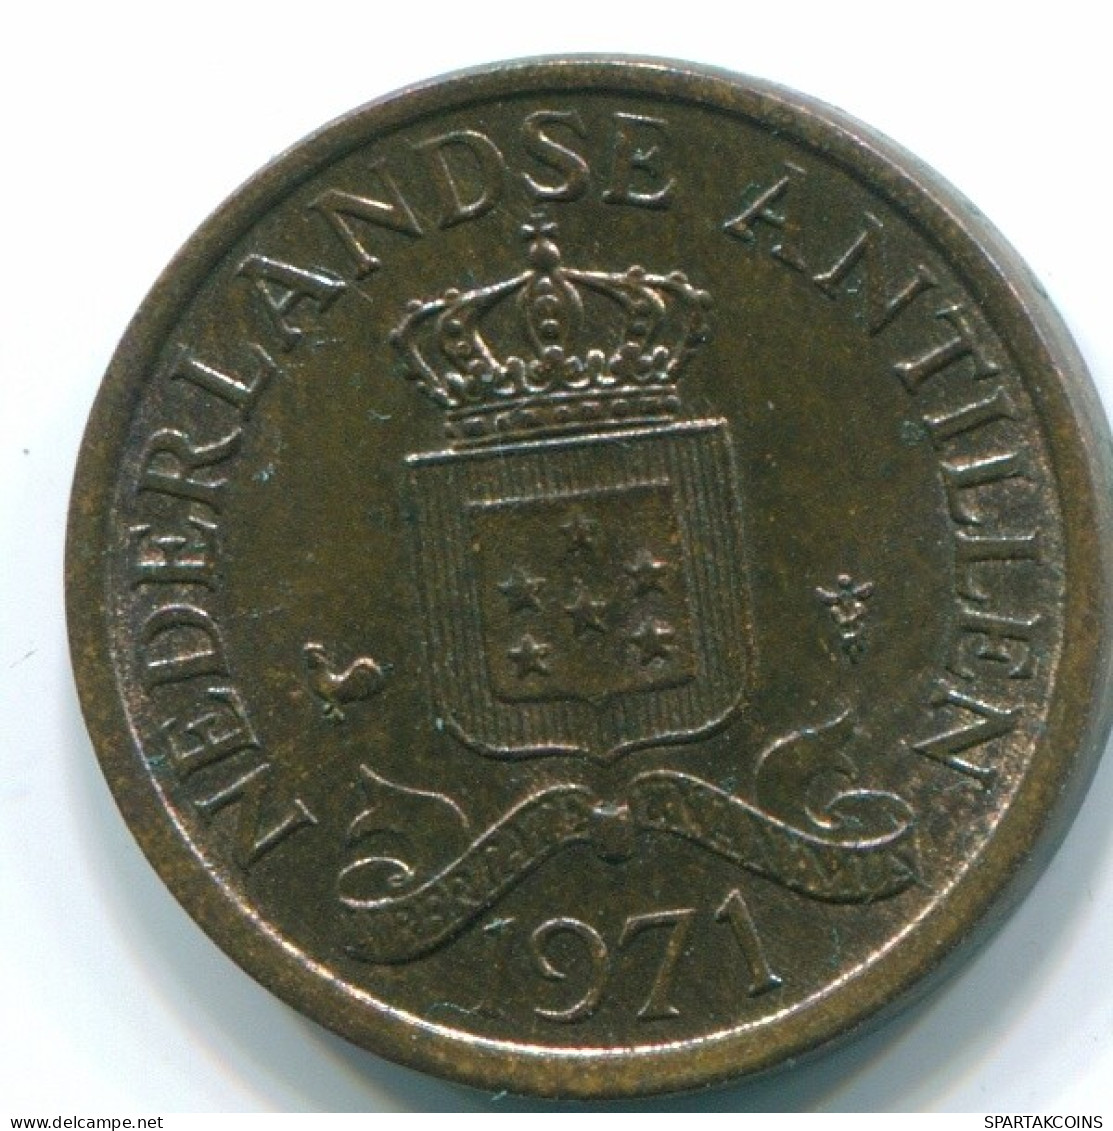 1 CENT 1971 NIEDERLÄNDISCHE ANTILLEN Bronze Koloniale Münze #S10615.D.A - Niederländische Antillen